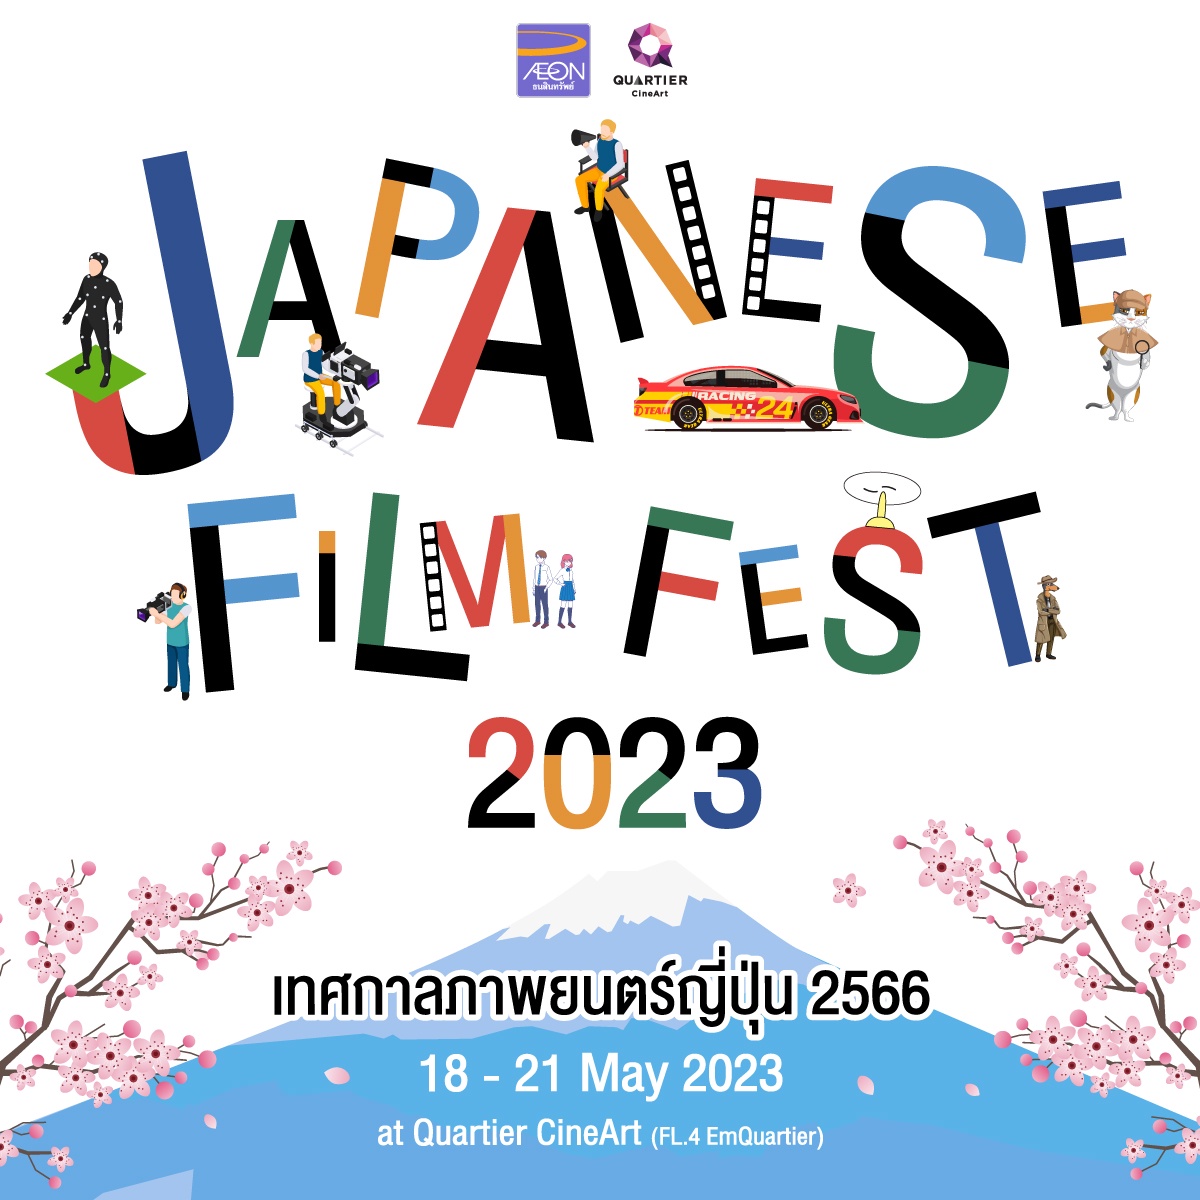 เมเจอร์ ซีนีเพล็กซ์ กรุ้ป ร่วมกับ อิออน จัดเทศกาลภาพยนตร์ญี่ปุ่น Japanese Film Fest 2023 คัดสรรหนังคุณภาพ 8 เรื่องครบรสให้ชมฟรี 18-21 พฤษภาคมนี้ ที่ ควอเทียร์